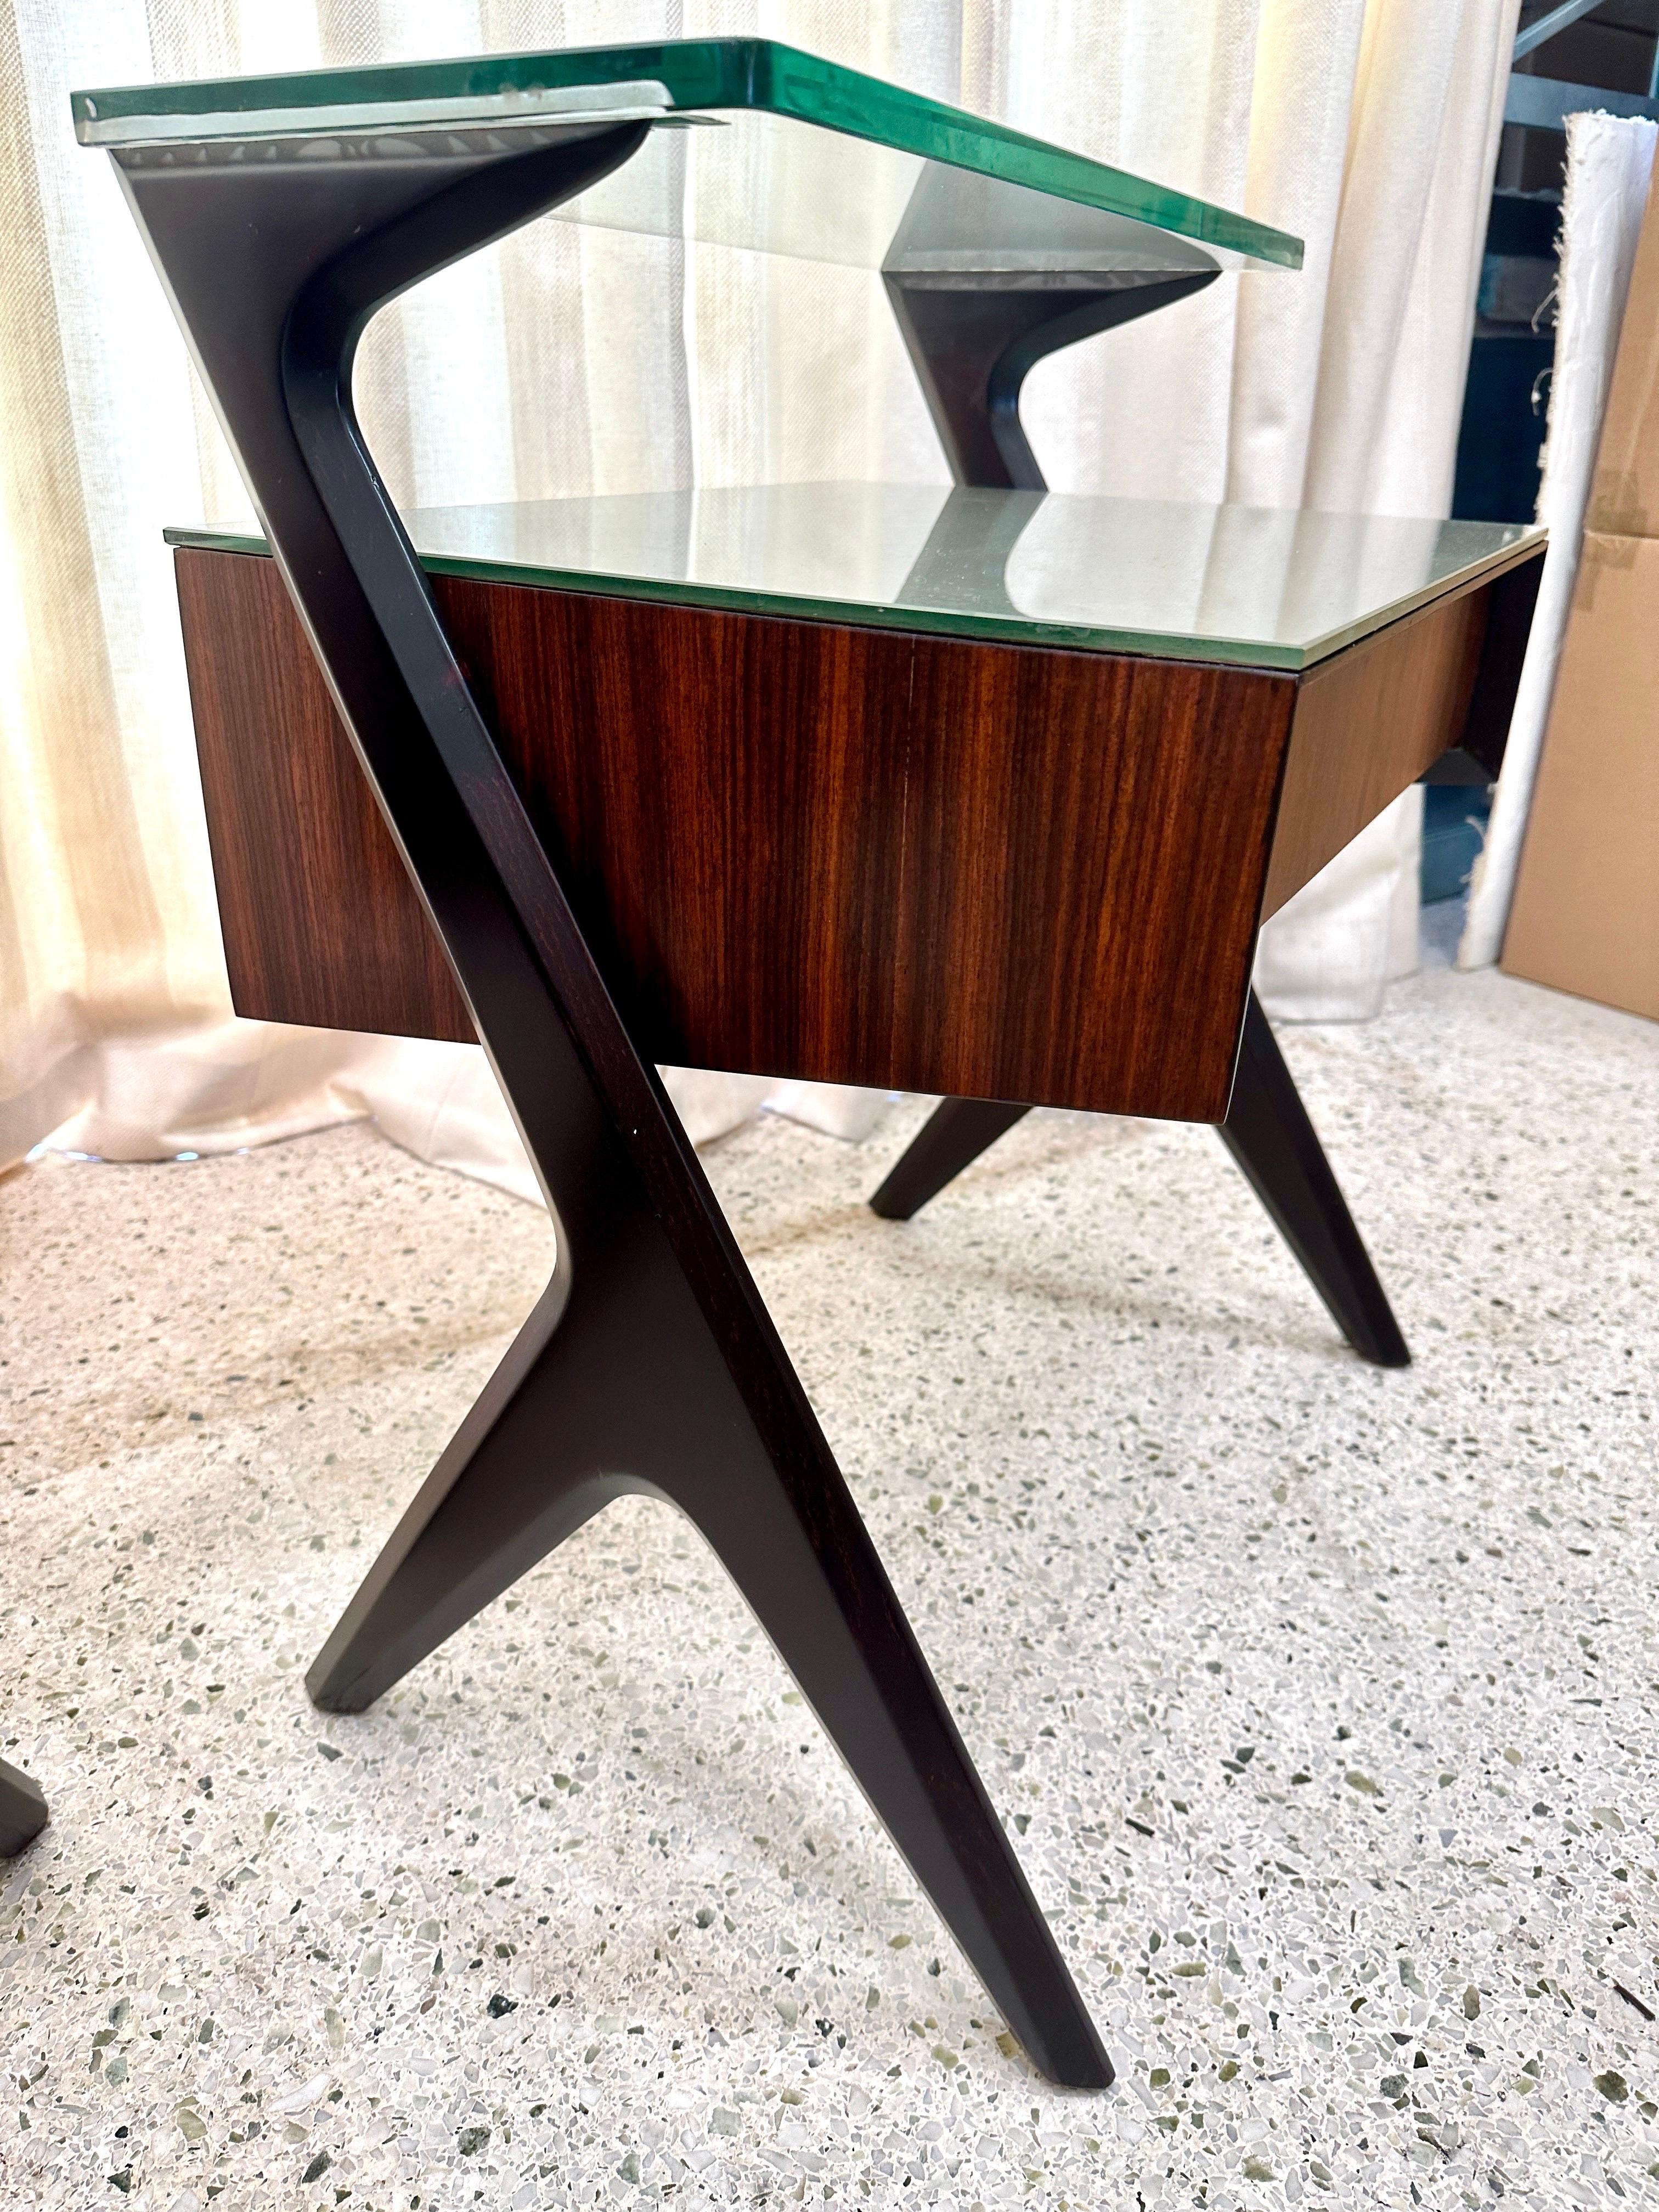 Superbes tables d'appoint ou tables de nuit conçues par Vittorio & Plinio Dassi dans les années 1950. Son caractère esthétique unique est dû à la forme sculpturale originale des tiroirs et des supports latéraux, ainsi qu'au plateau en verre gris